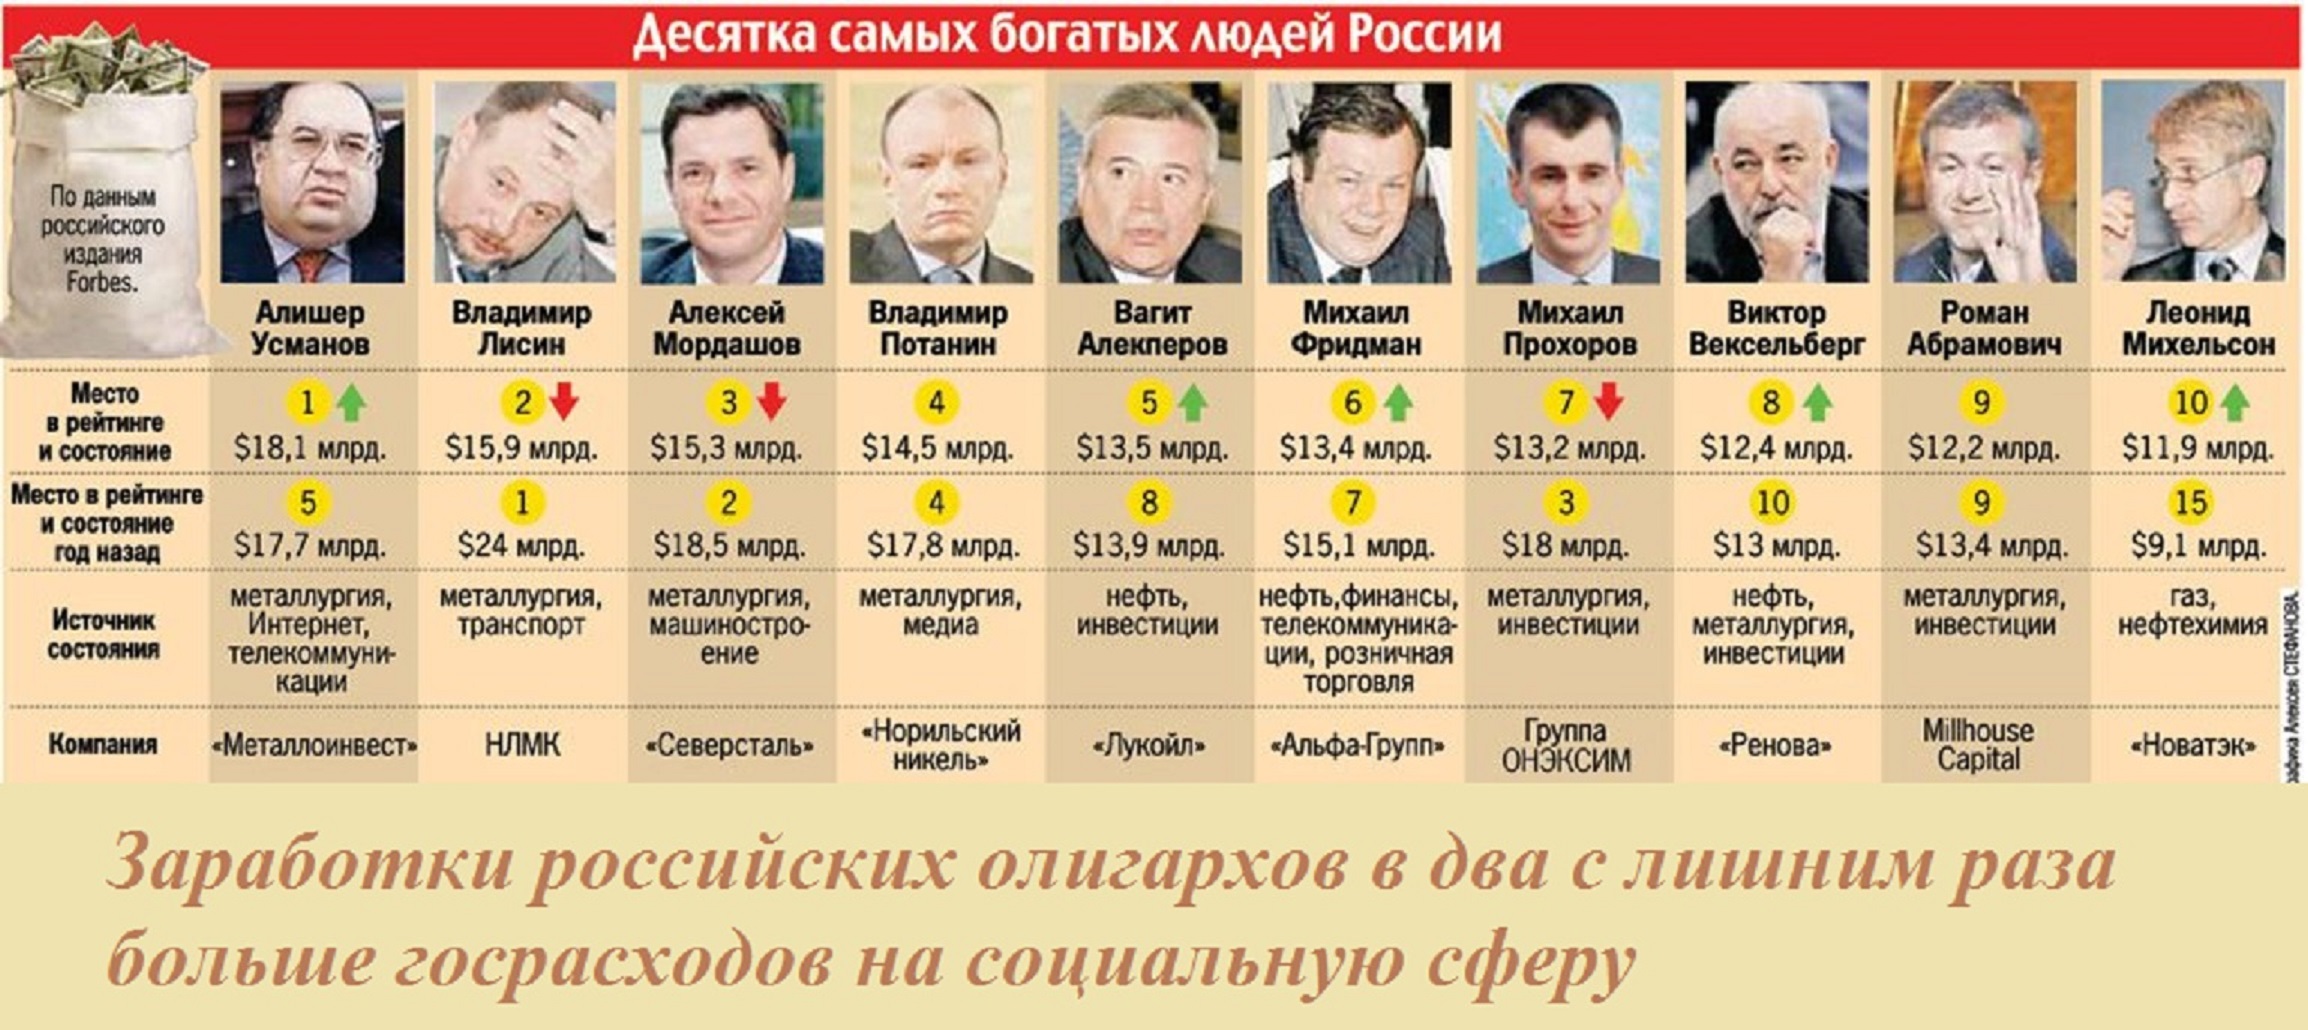 Российские олигархи список